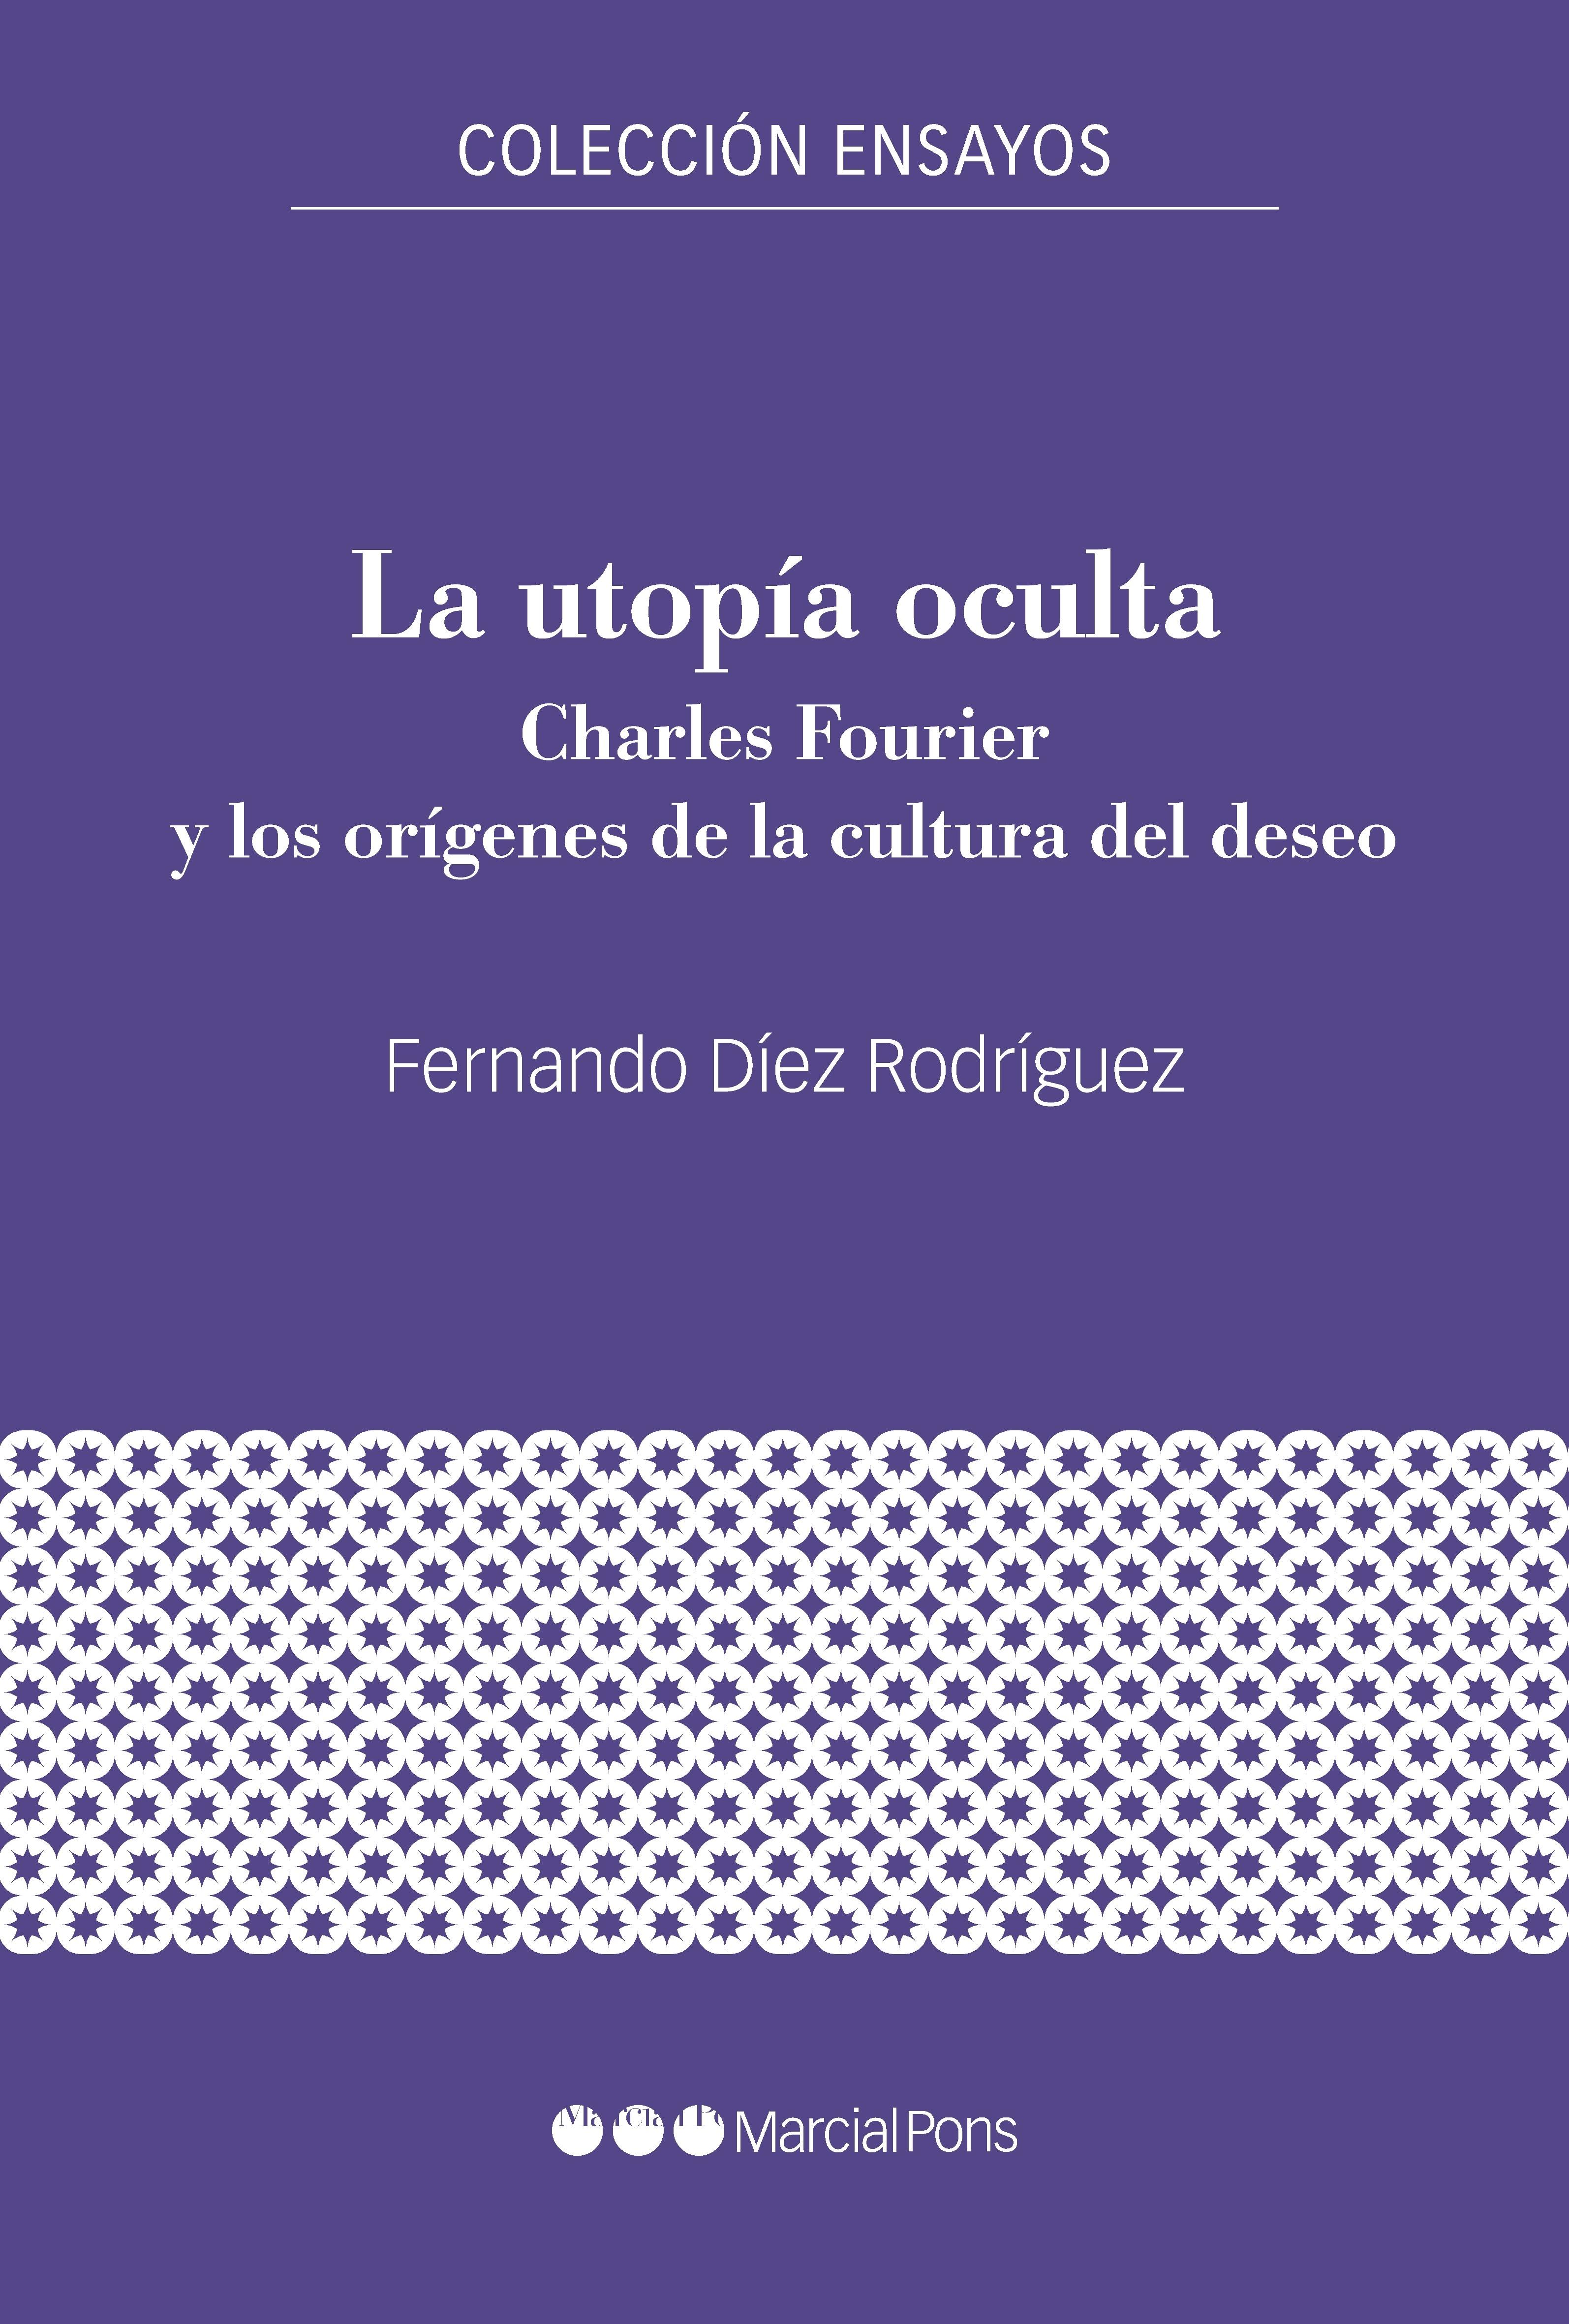 La utopía oculta "Charles Fourier y los orígenes de la cultura del deseo". 